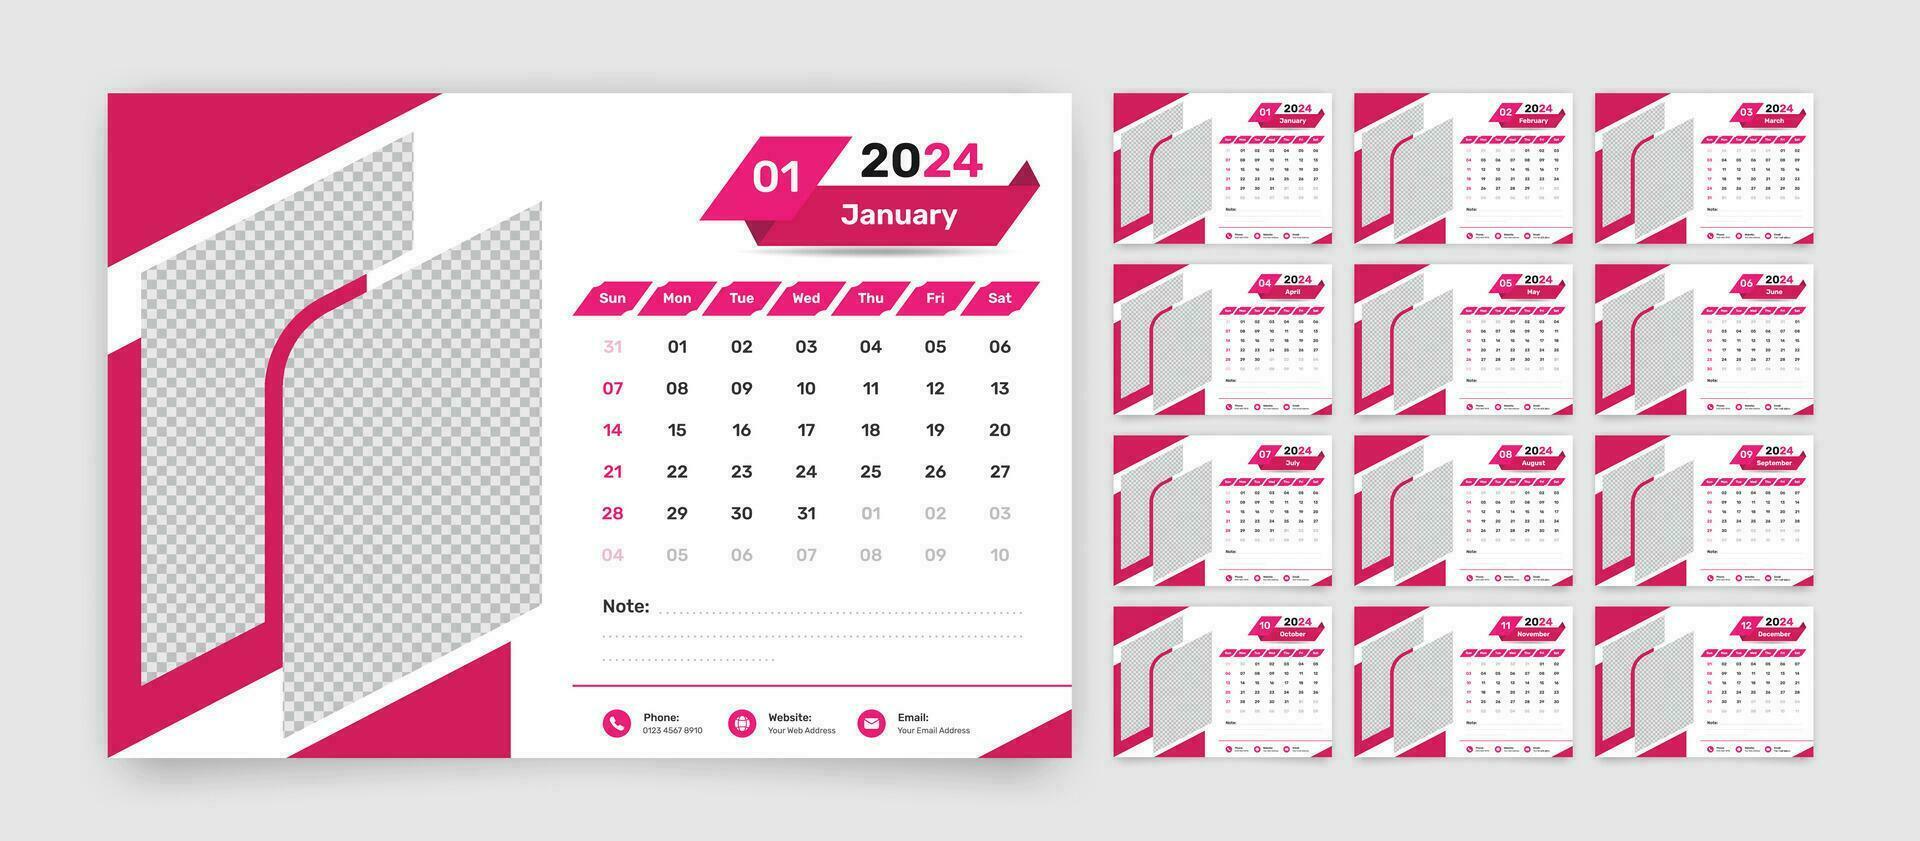 enkel designad företag och kontor skrivbord kalender mall uppsättning för 2024 med exakt datum formatera vektor